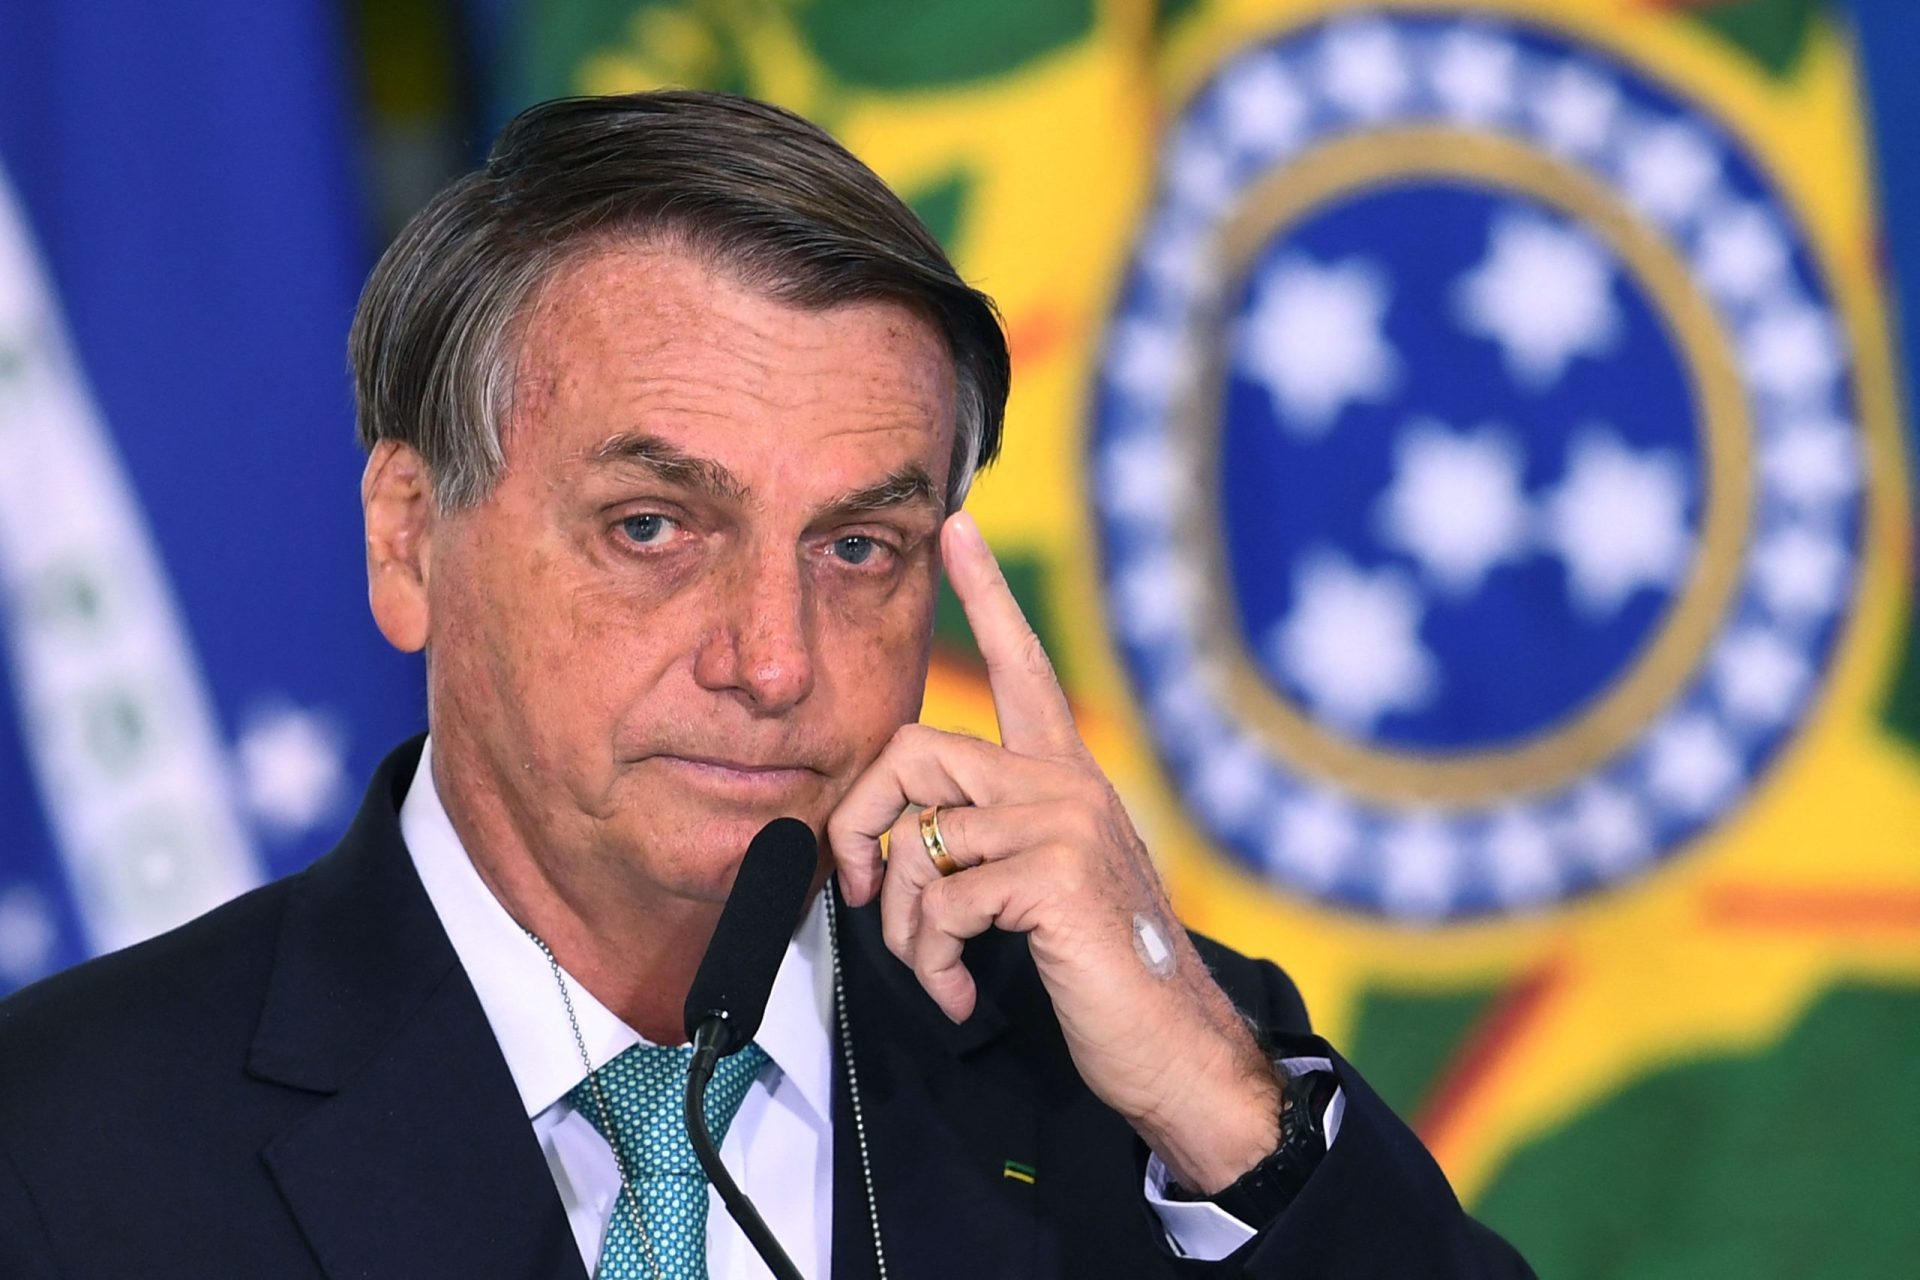 Bolsonaro multado por não usar máscara em evento público em São Paulo